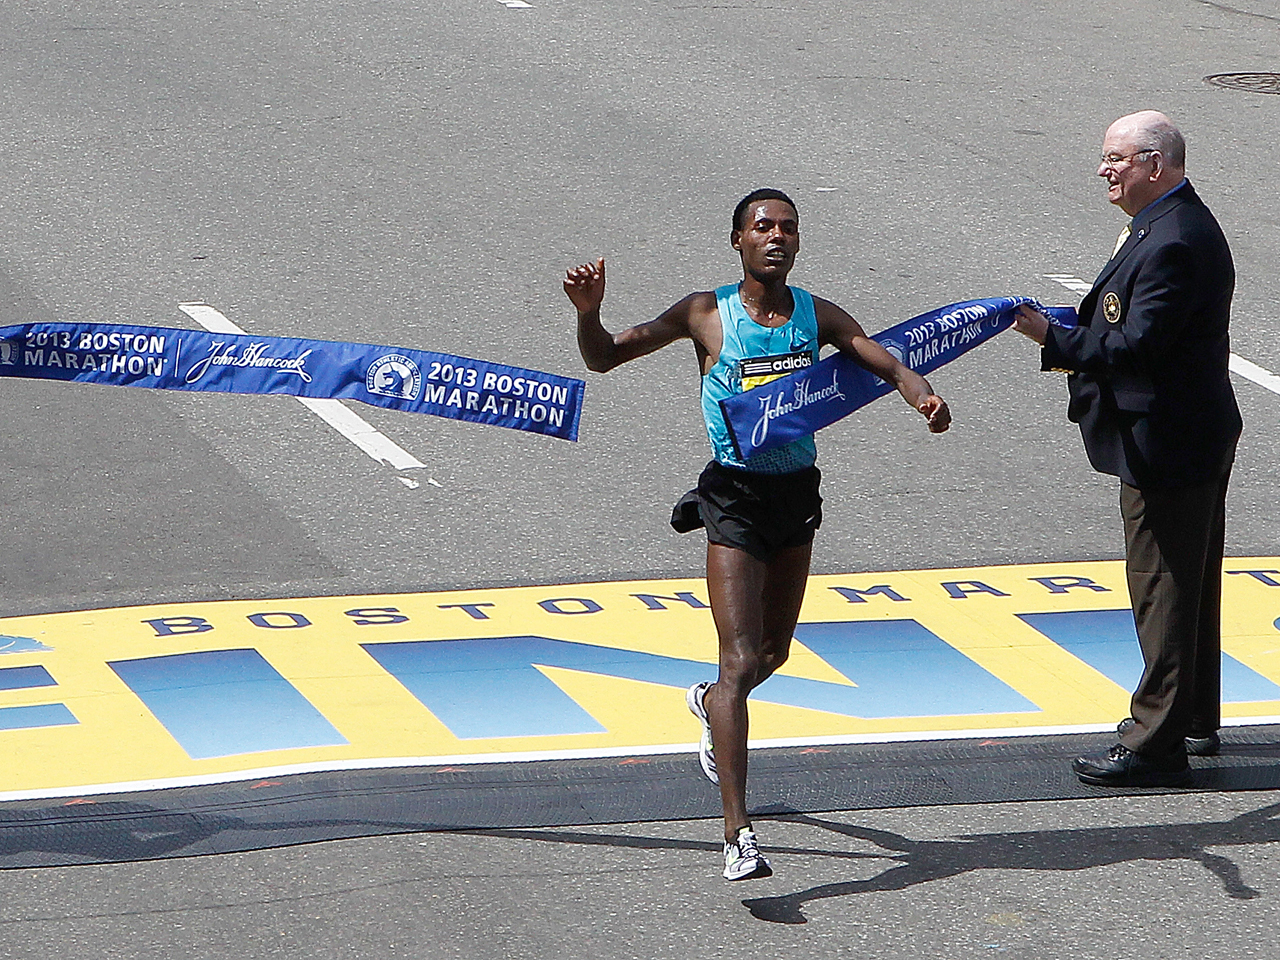 Boston Marathon winner gives medal back CBS News